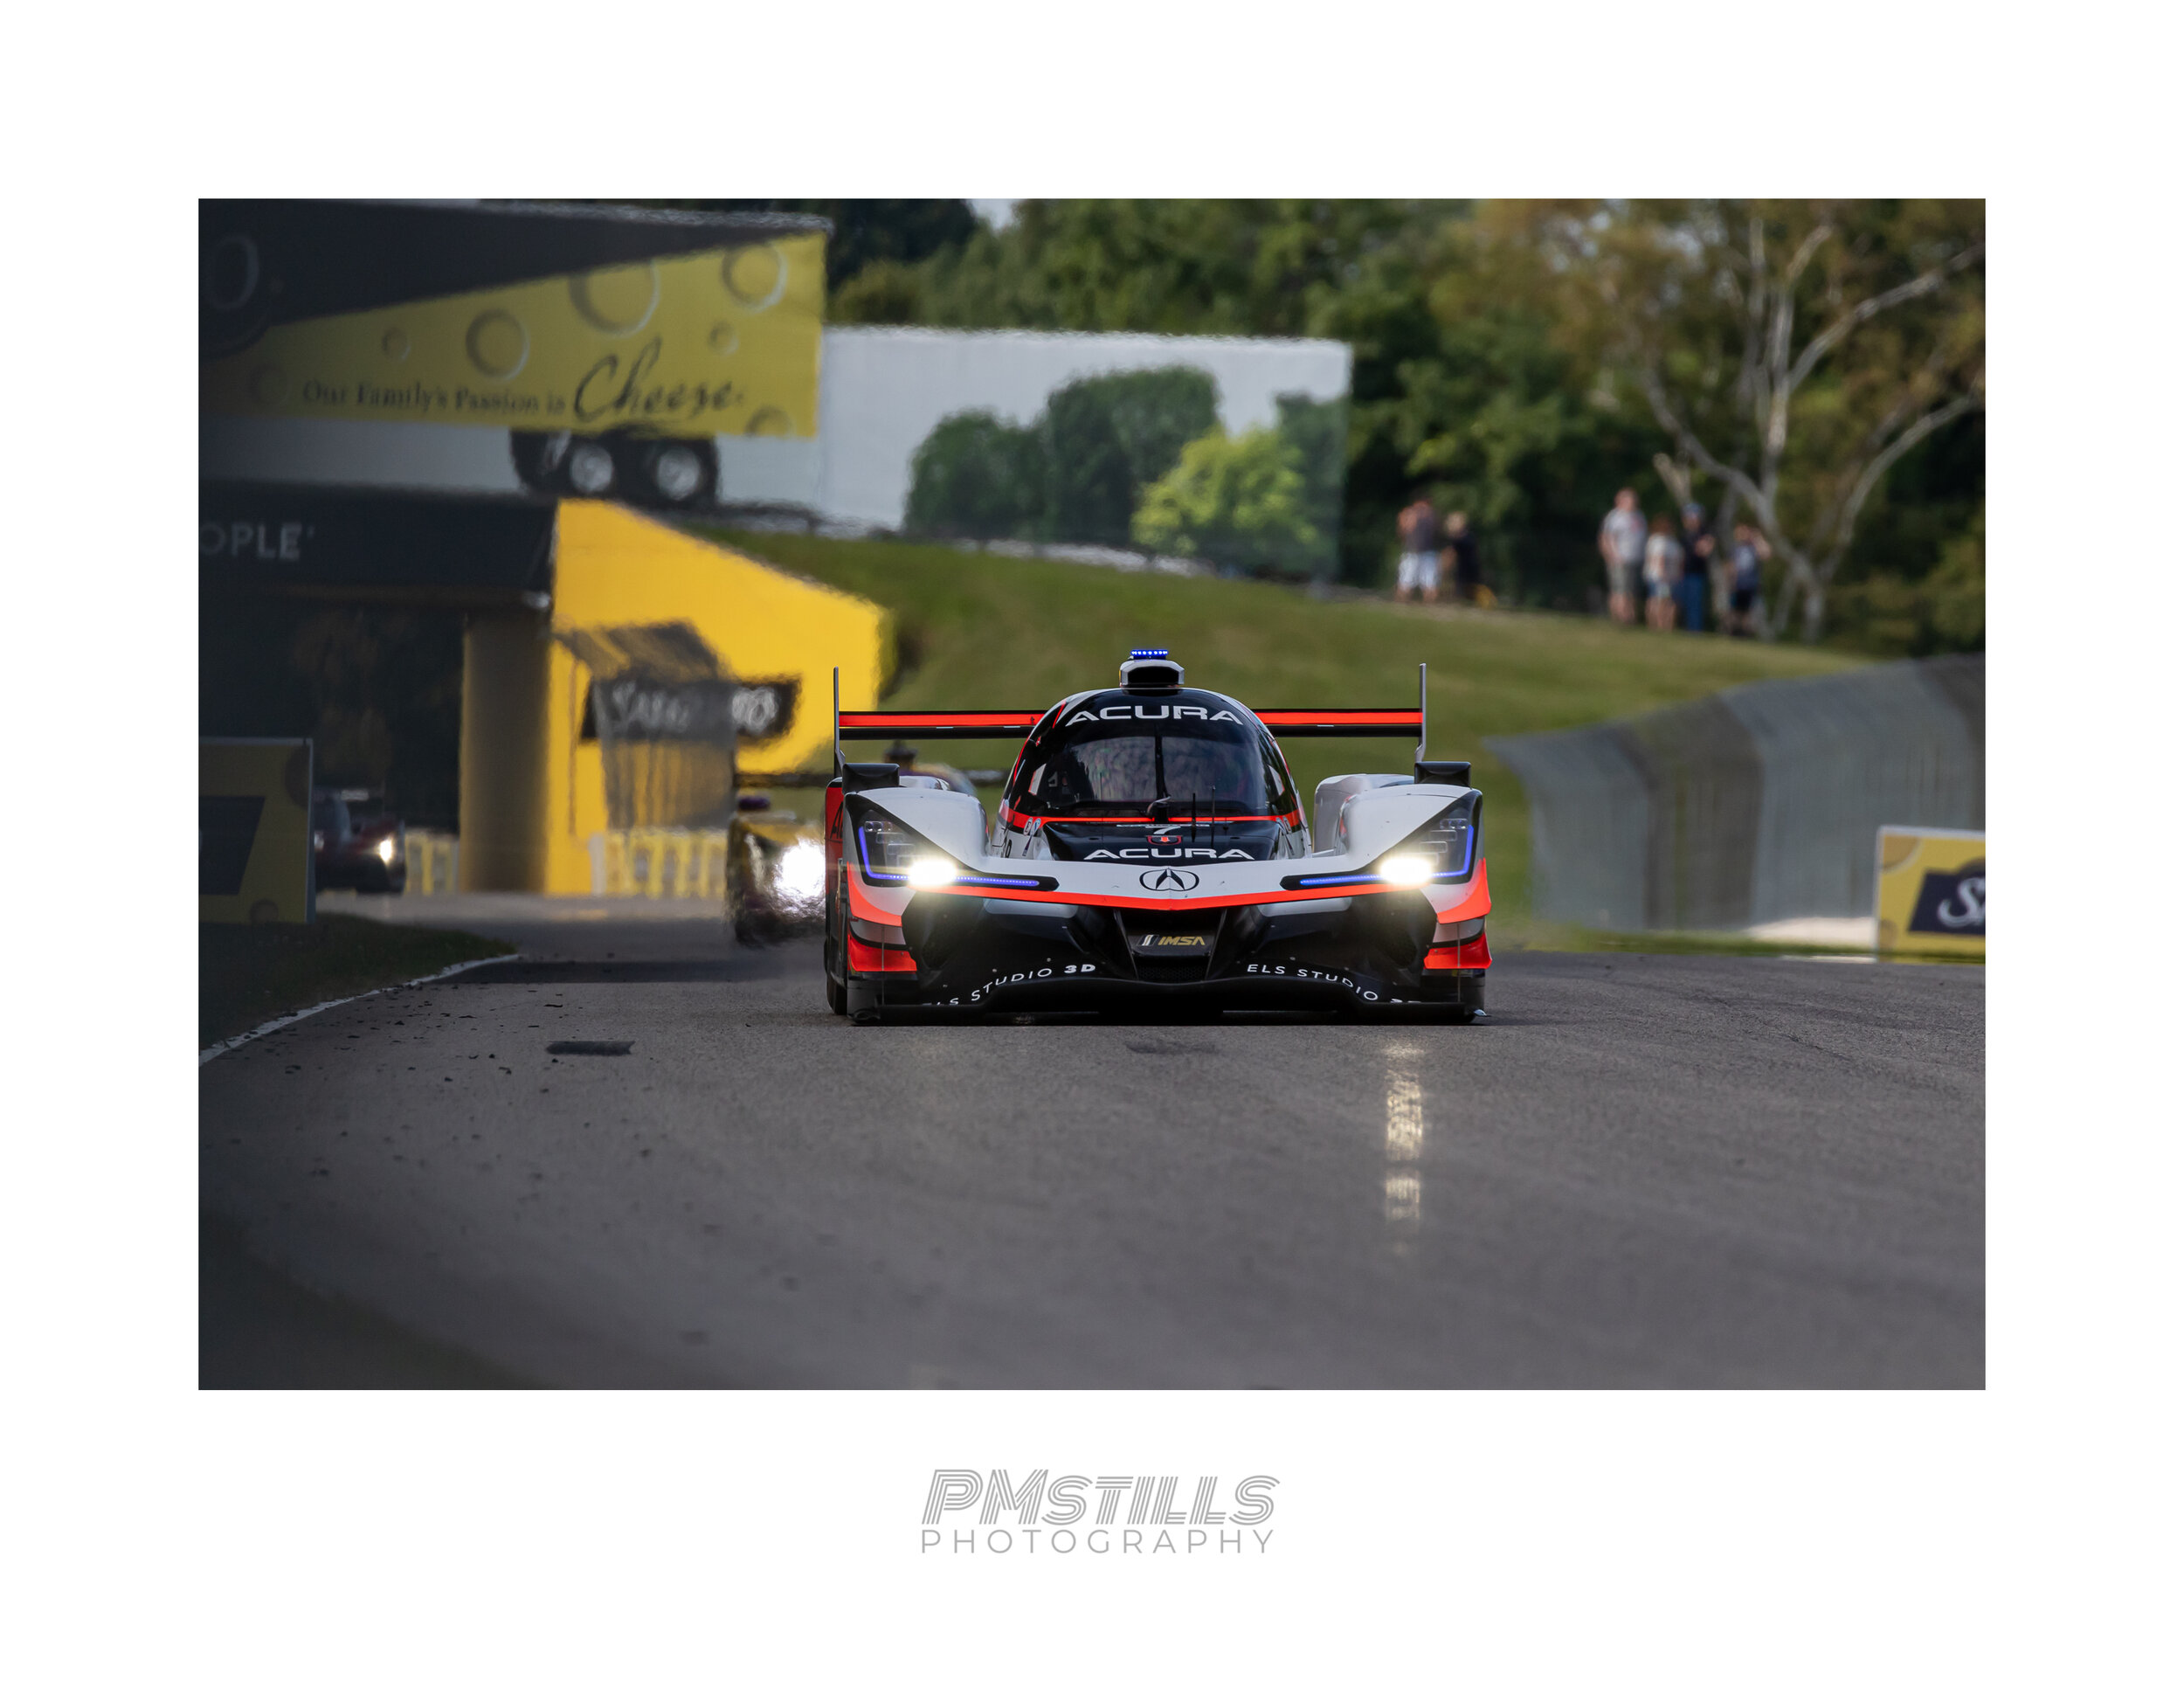 Acura Team Penske - FP3.jpg